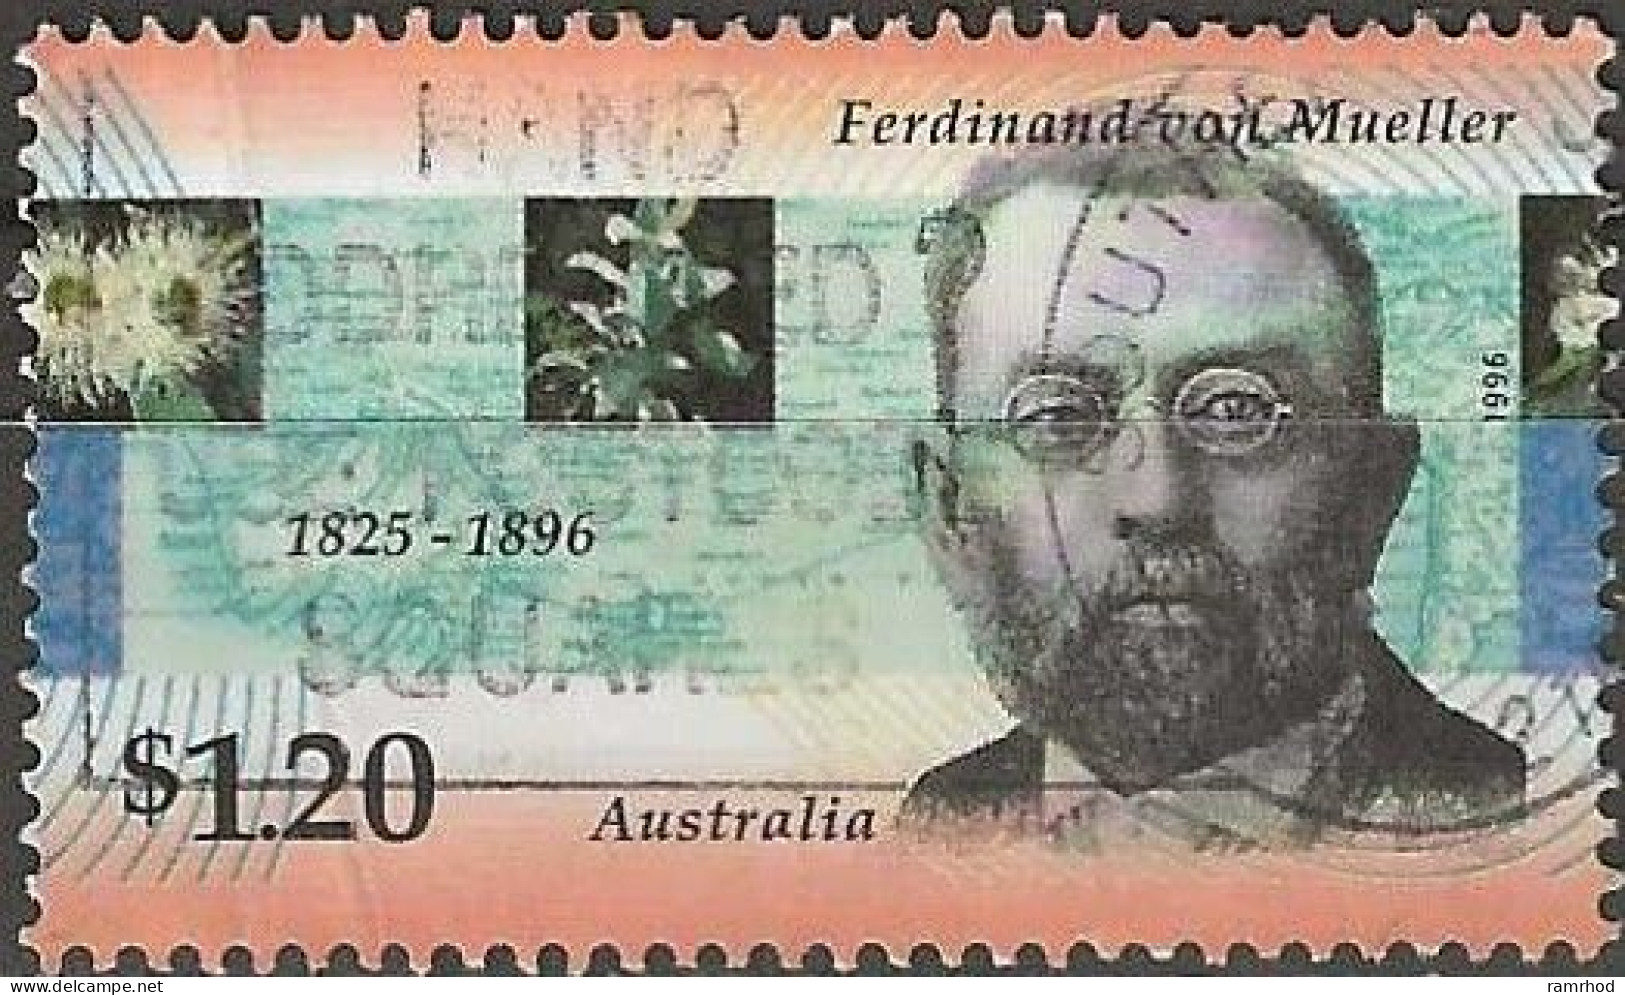 AUSTRALIA 1996 Death Centenary Of Ferdinand Von Mueller (botanist) - $1.20 Ferdinand Von Mueller FU - Gebruikt